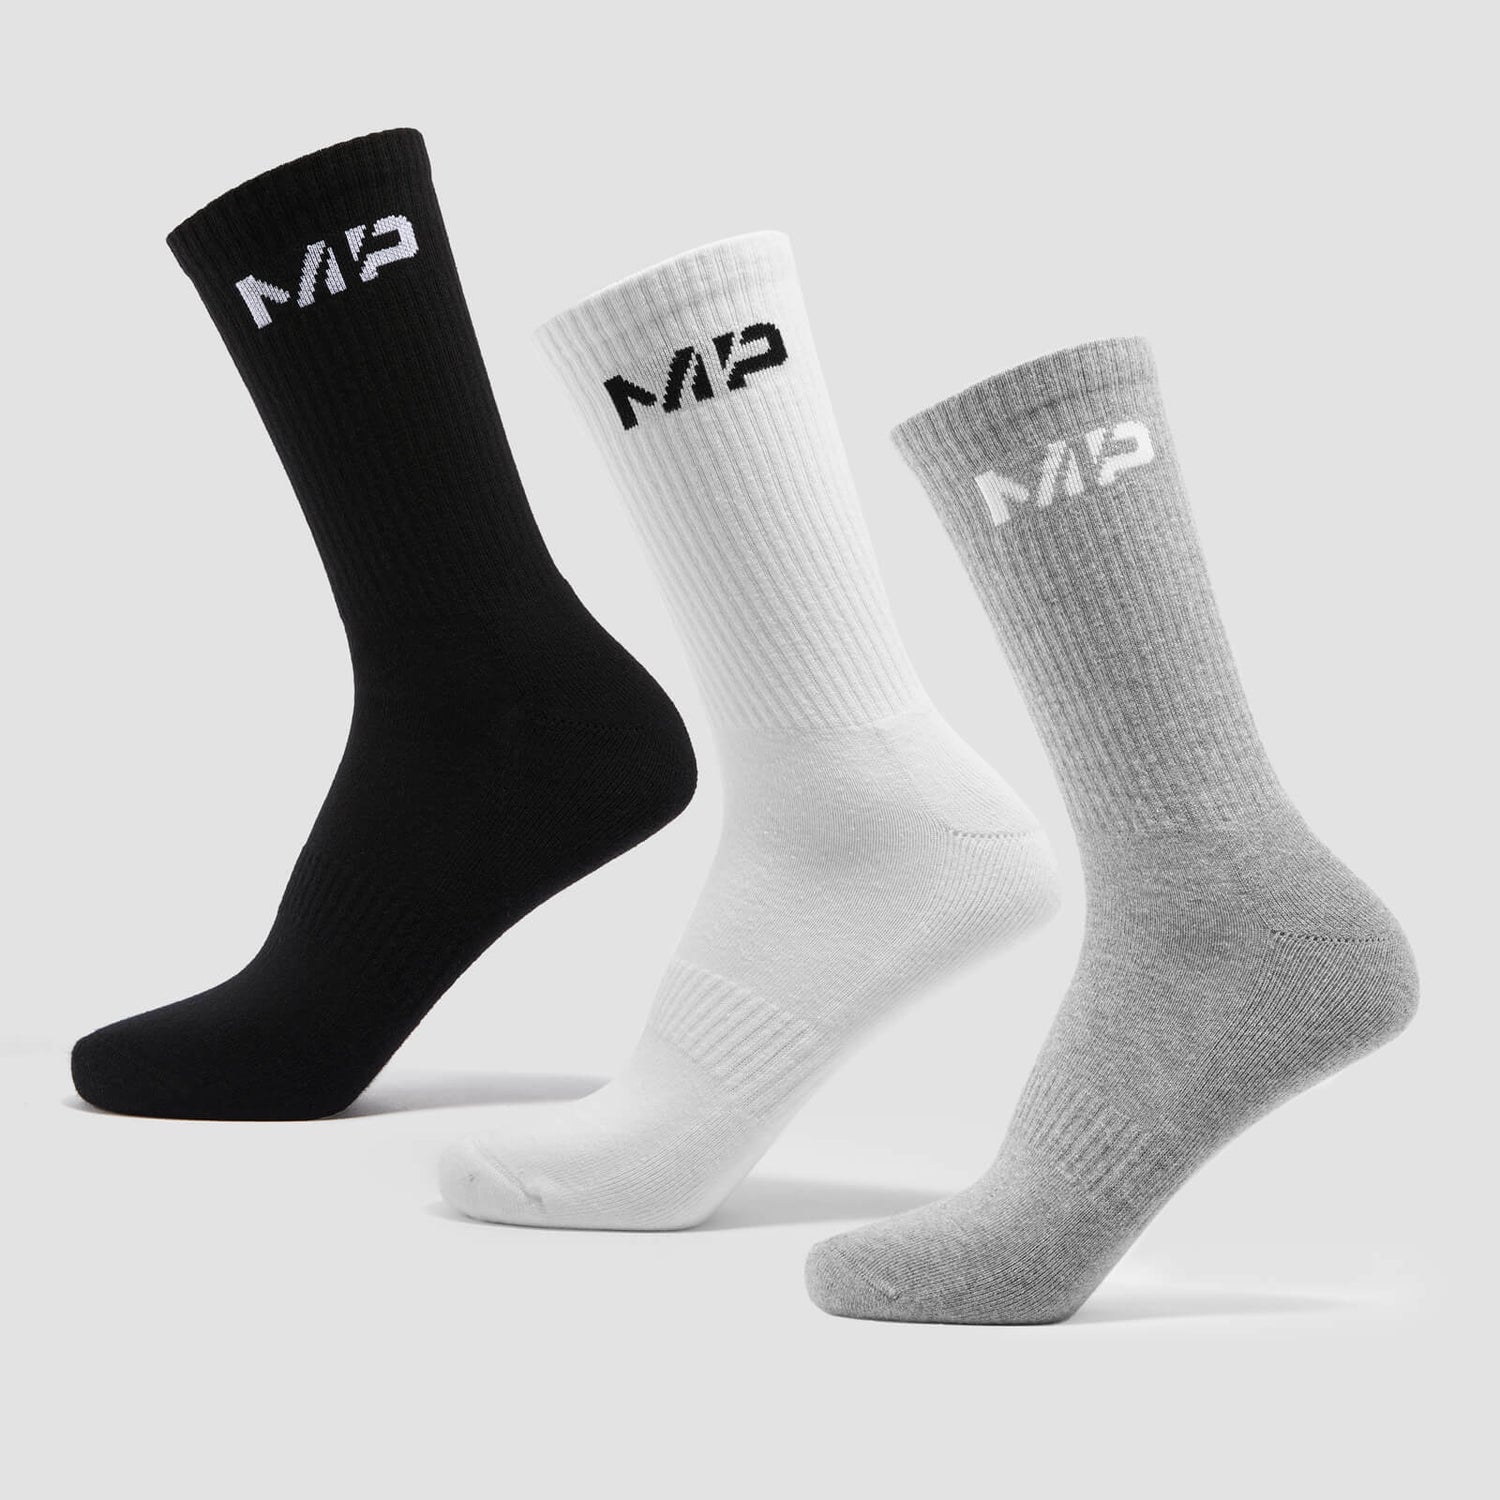 MP Unisex Crew Socks (3 Pack) - White/Black/Grey Marl - UK 2-5